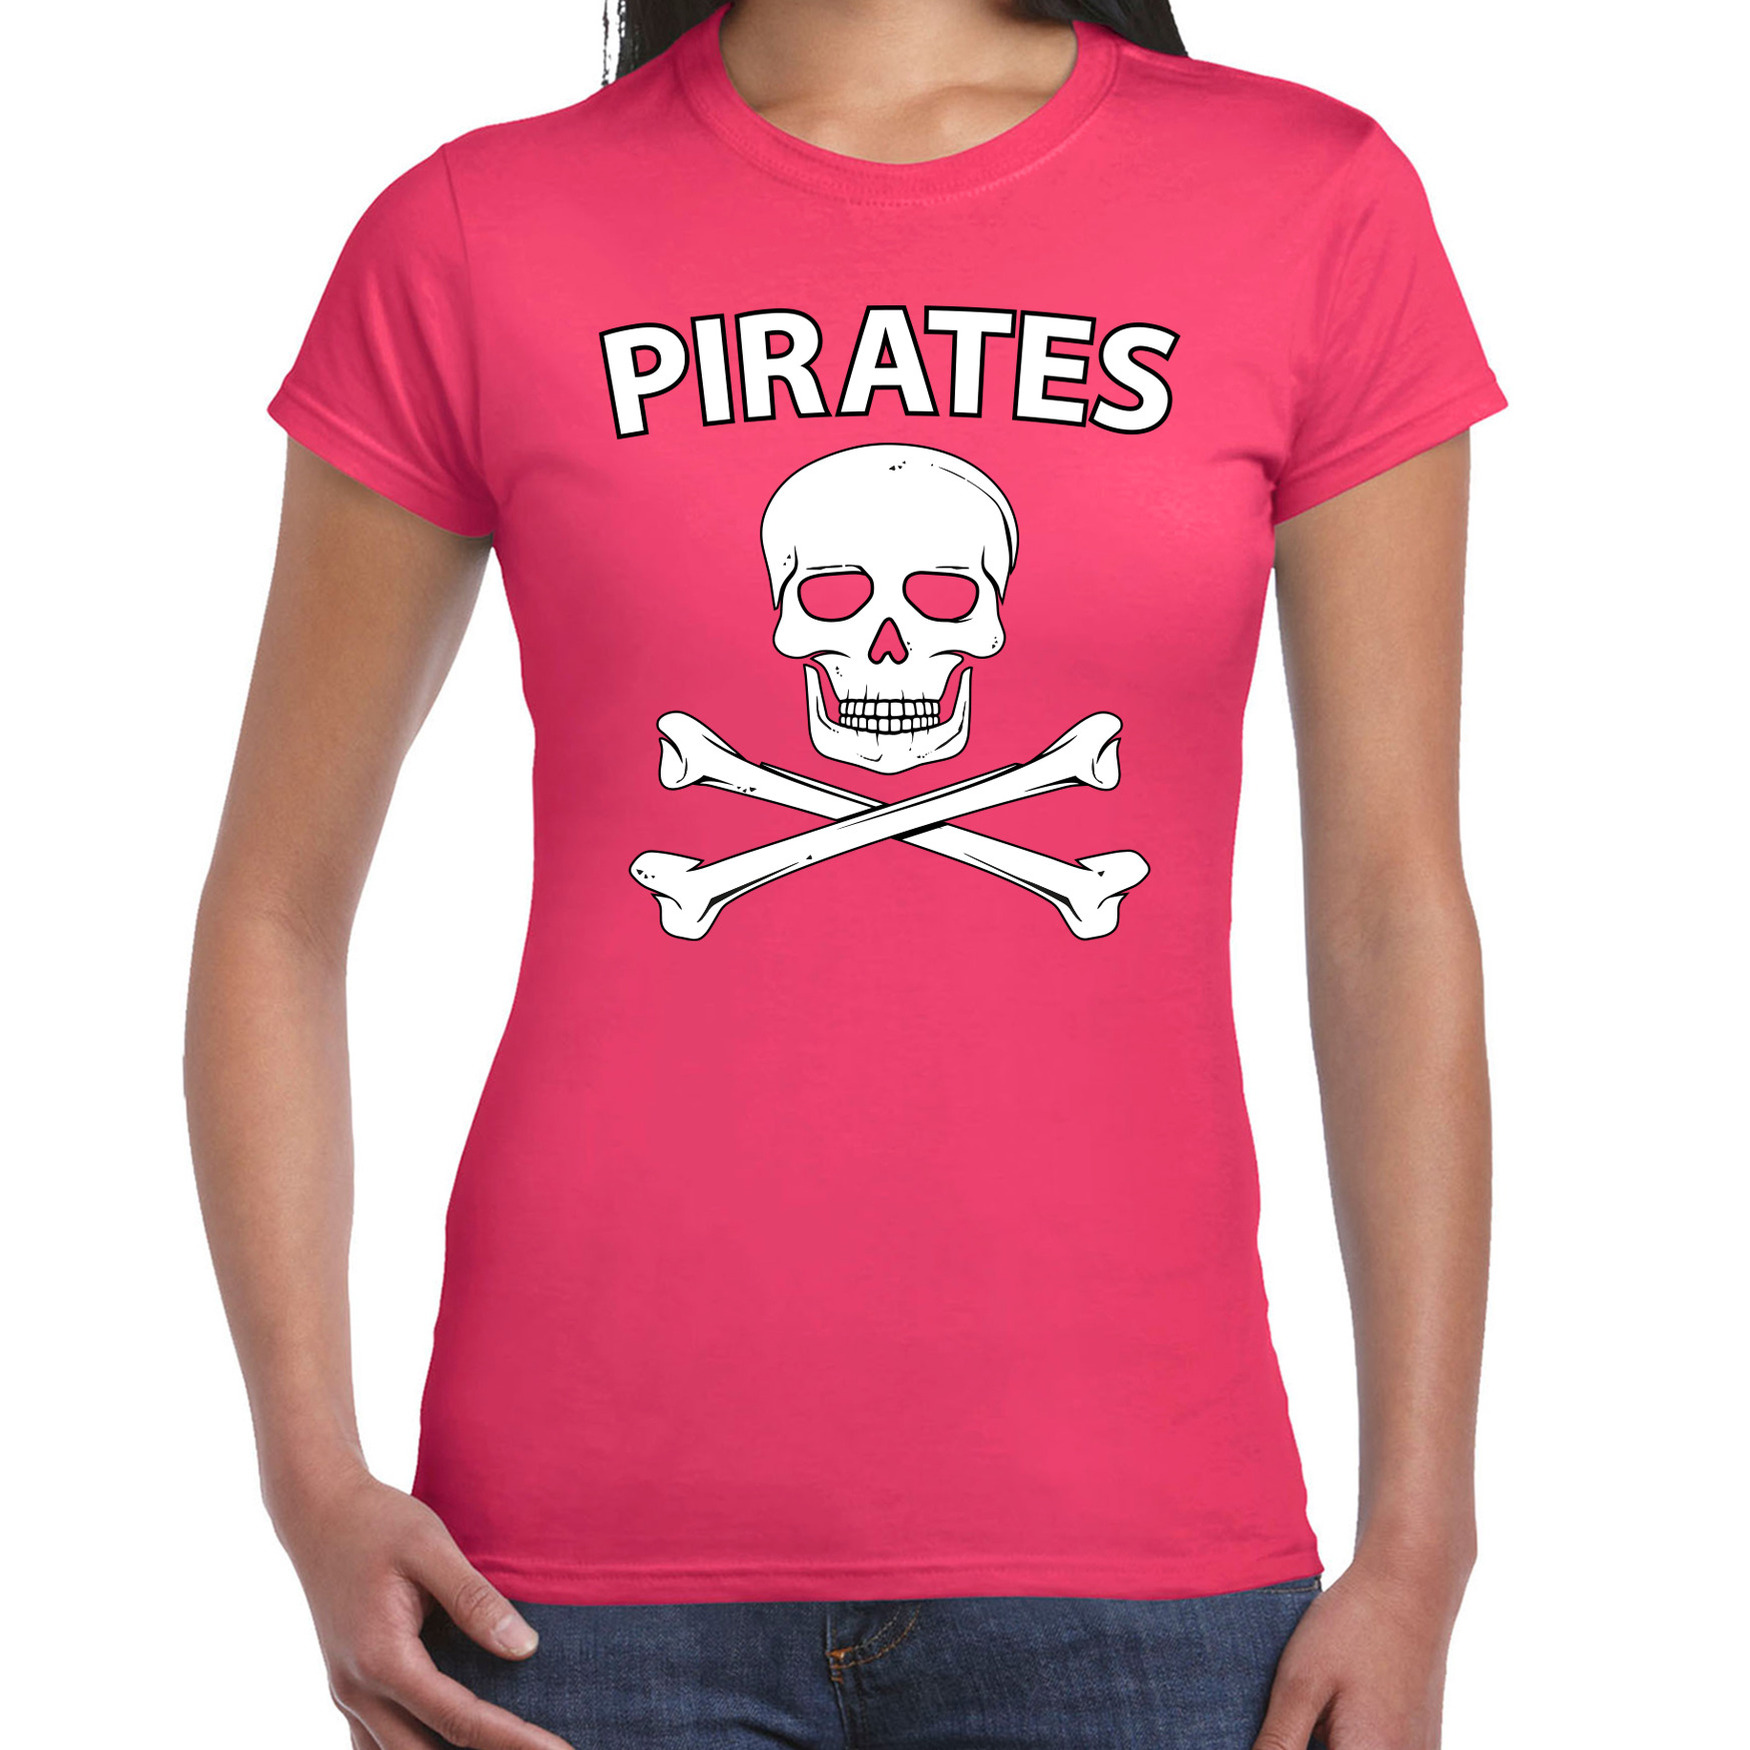 Fout piraten shirt / foute party verkleed shirt roze dames